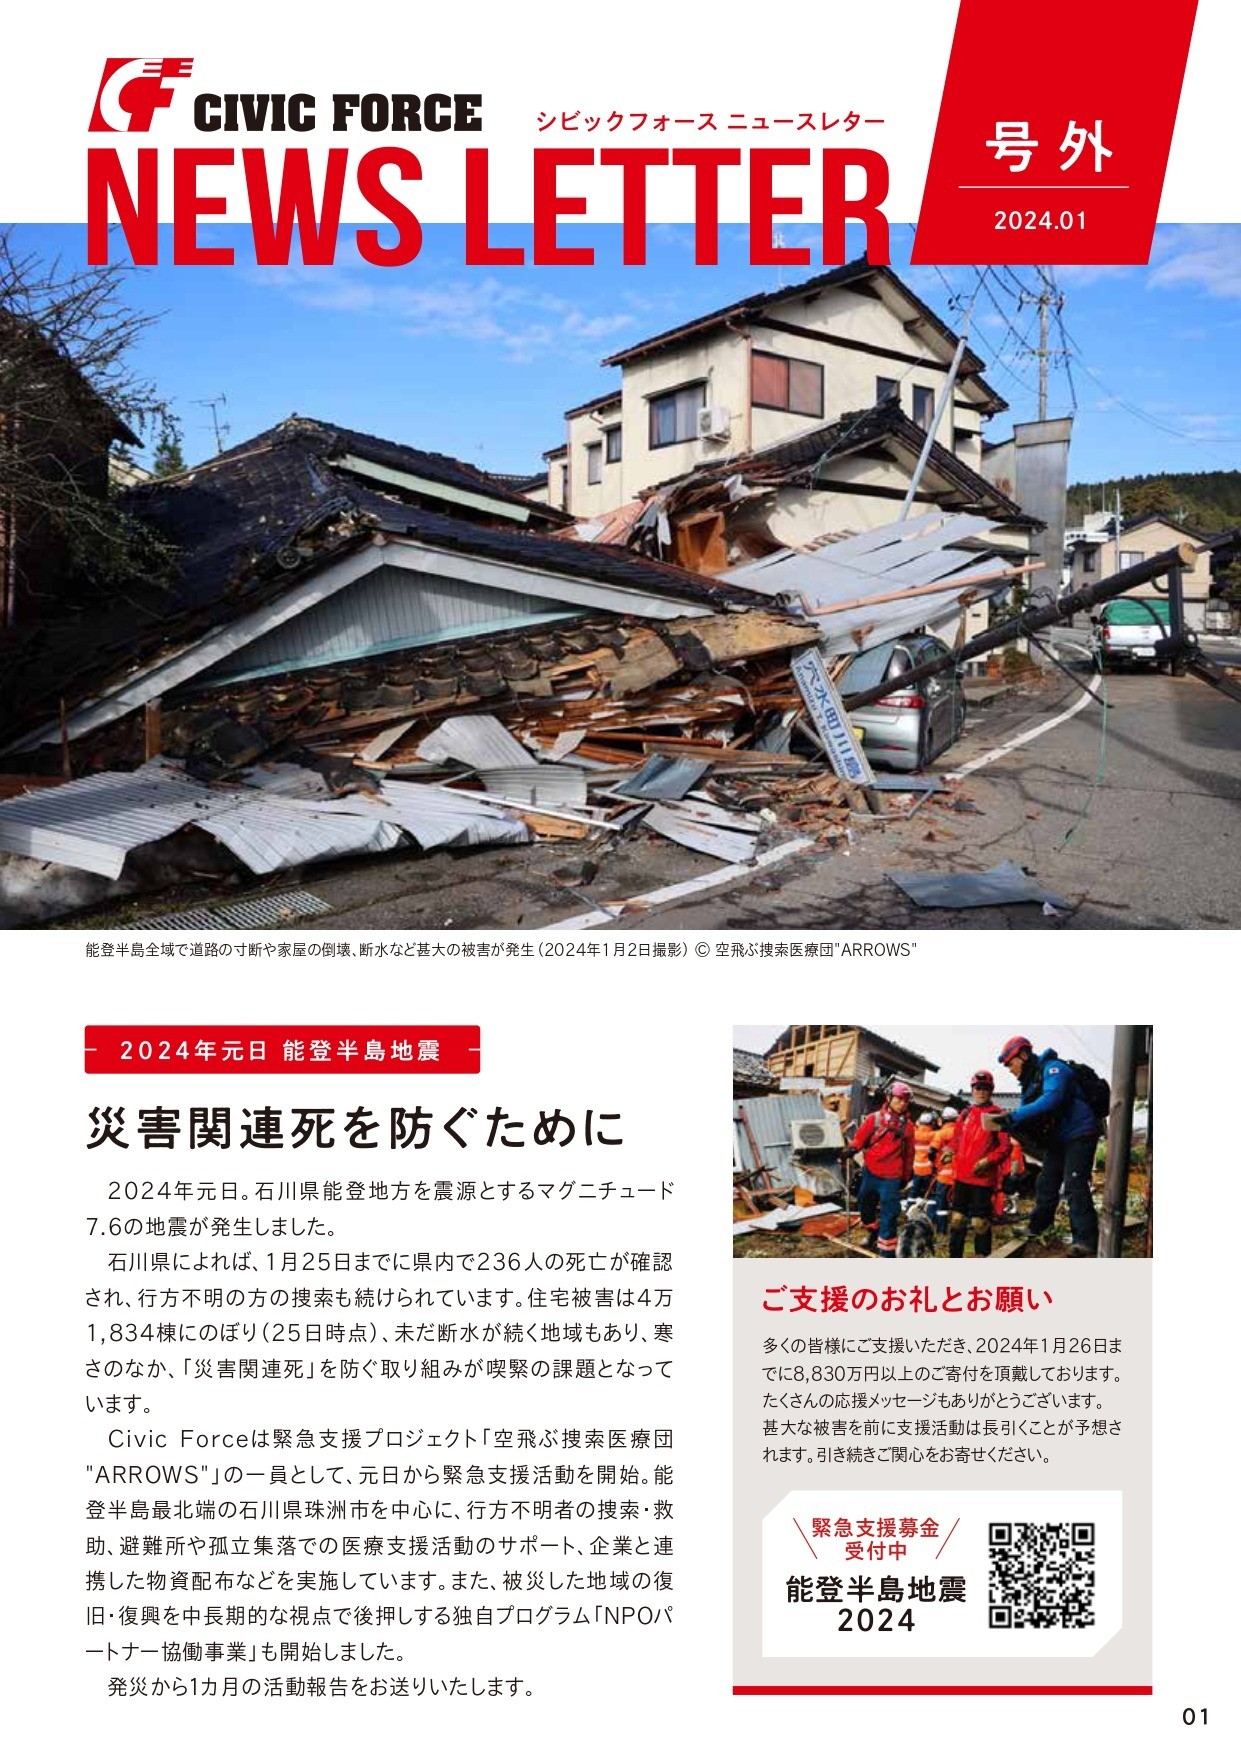 ニュースレター号外 ー能登半島地震から1カ月